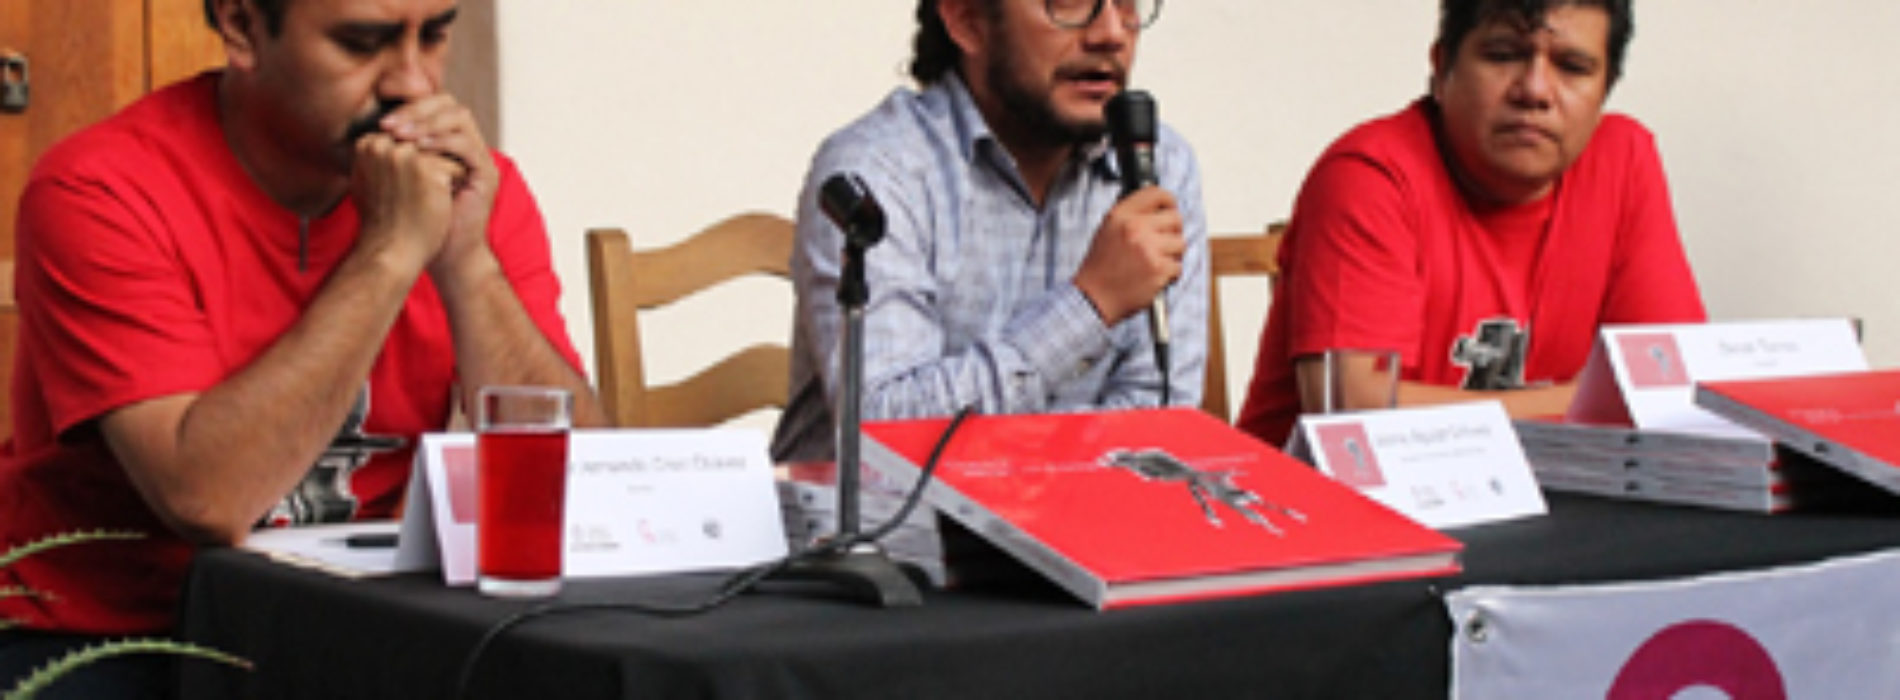 Libro fotográfico sobre Oaxaca presentado en el Centro Fotográfico “Manuel Álvarez Bravo”